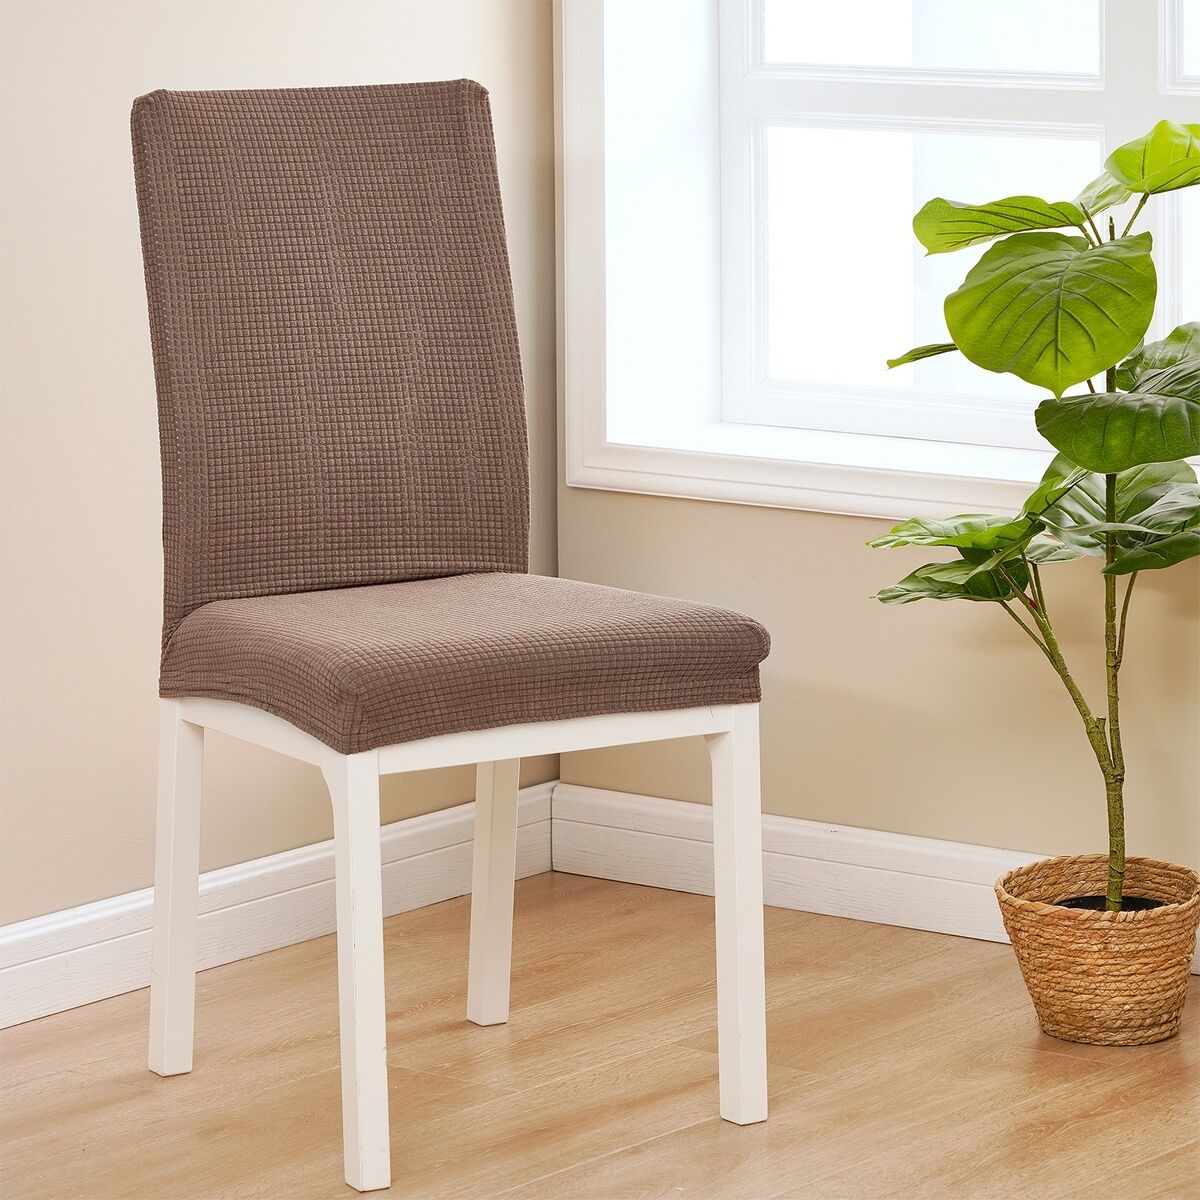 4Home Elastyczny pokrowiec na krzesło Magic clean brązowy, 45 - 50 cm, zestaw 2 szt.